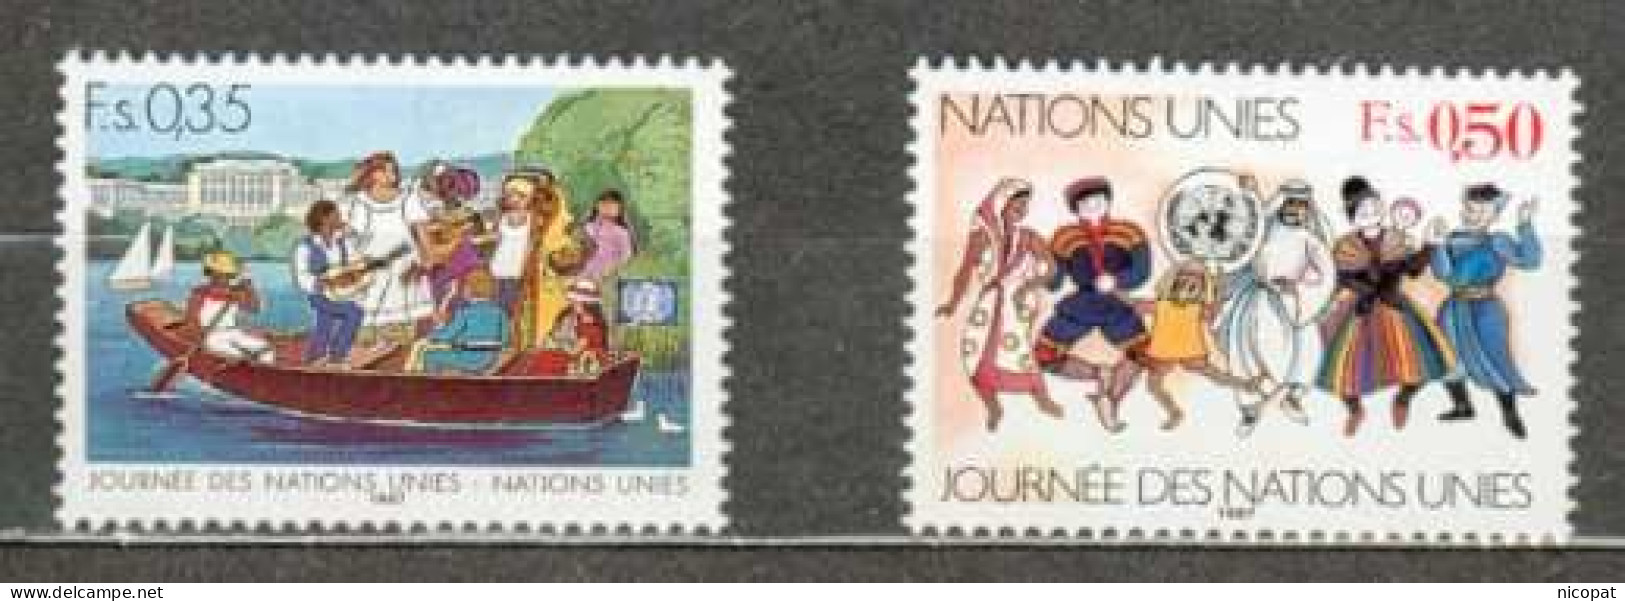 ONU GENEVE MNH ** 158-159 Journée Des Nations Unies Barque Sur Un Lac Costumes Nationaux Folklore - Neufs